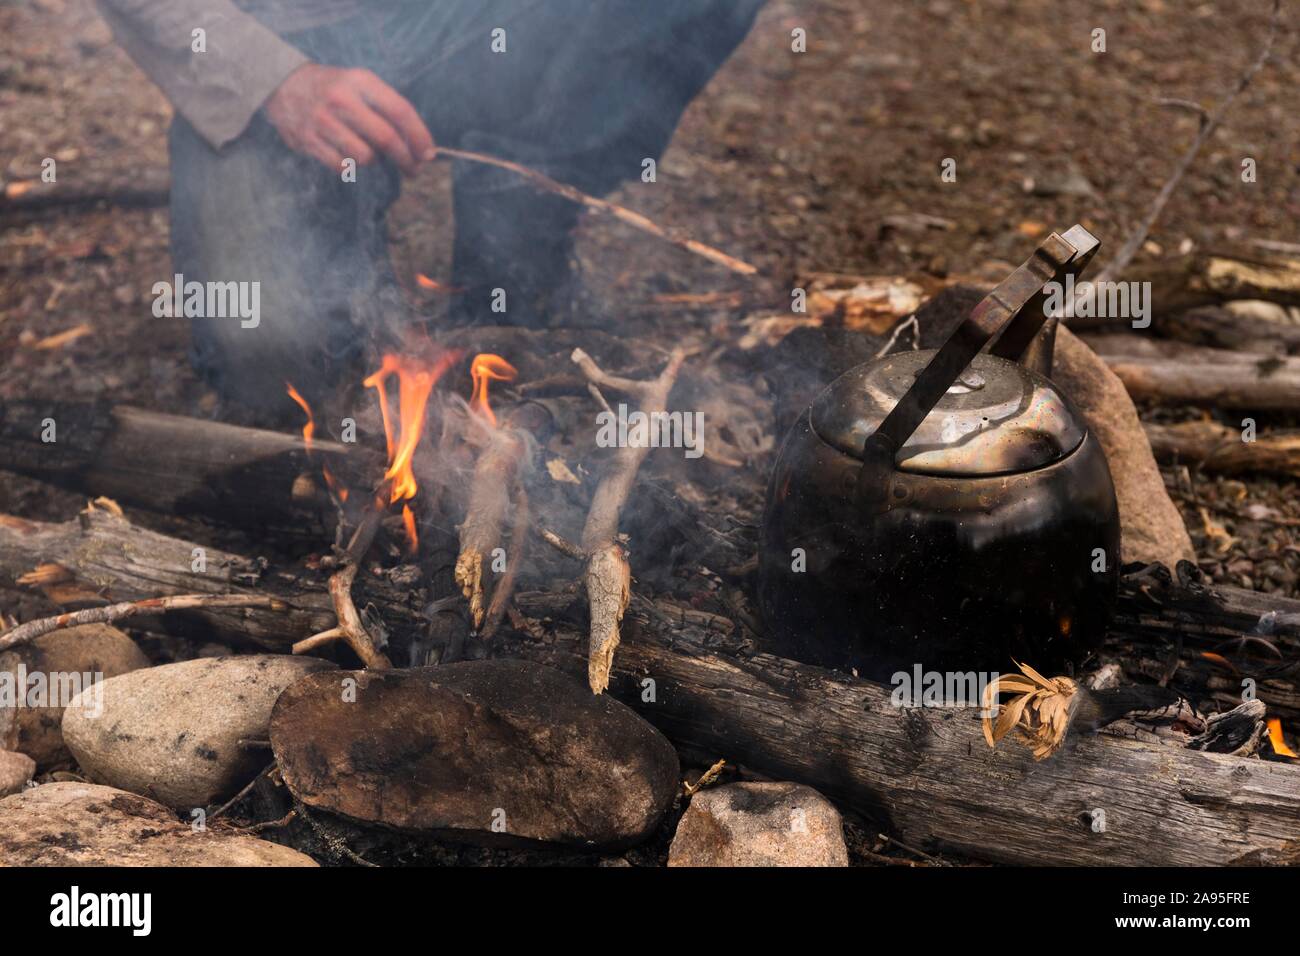 Bollitore per caffè sul fuoco, dietro di esso le gambe di una persona inginocchiata ai falò, Harjedalen, Svezia Foto Stock